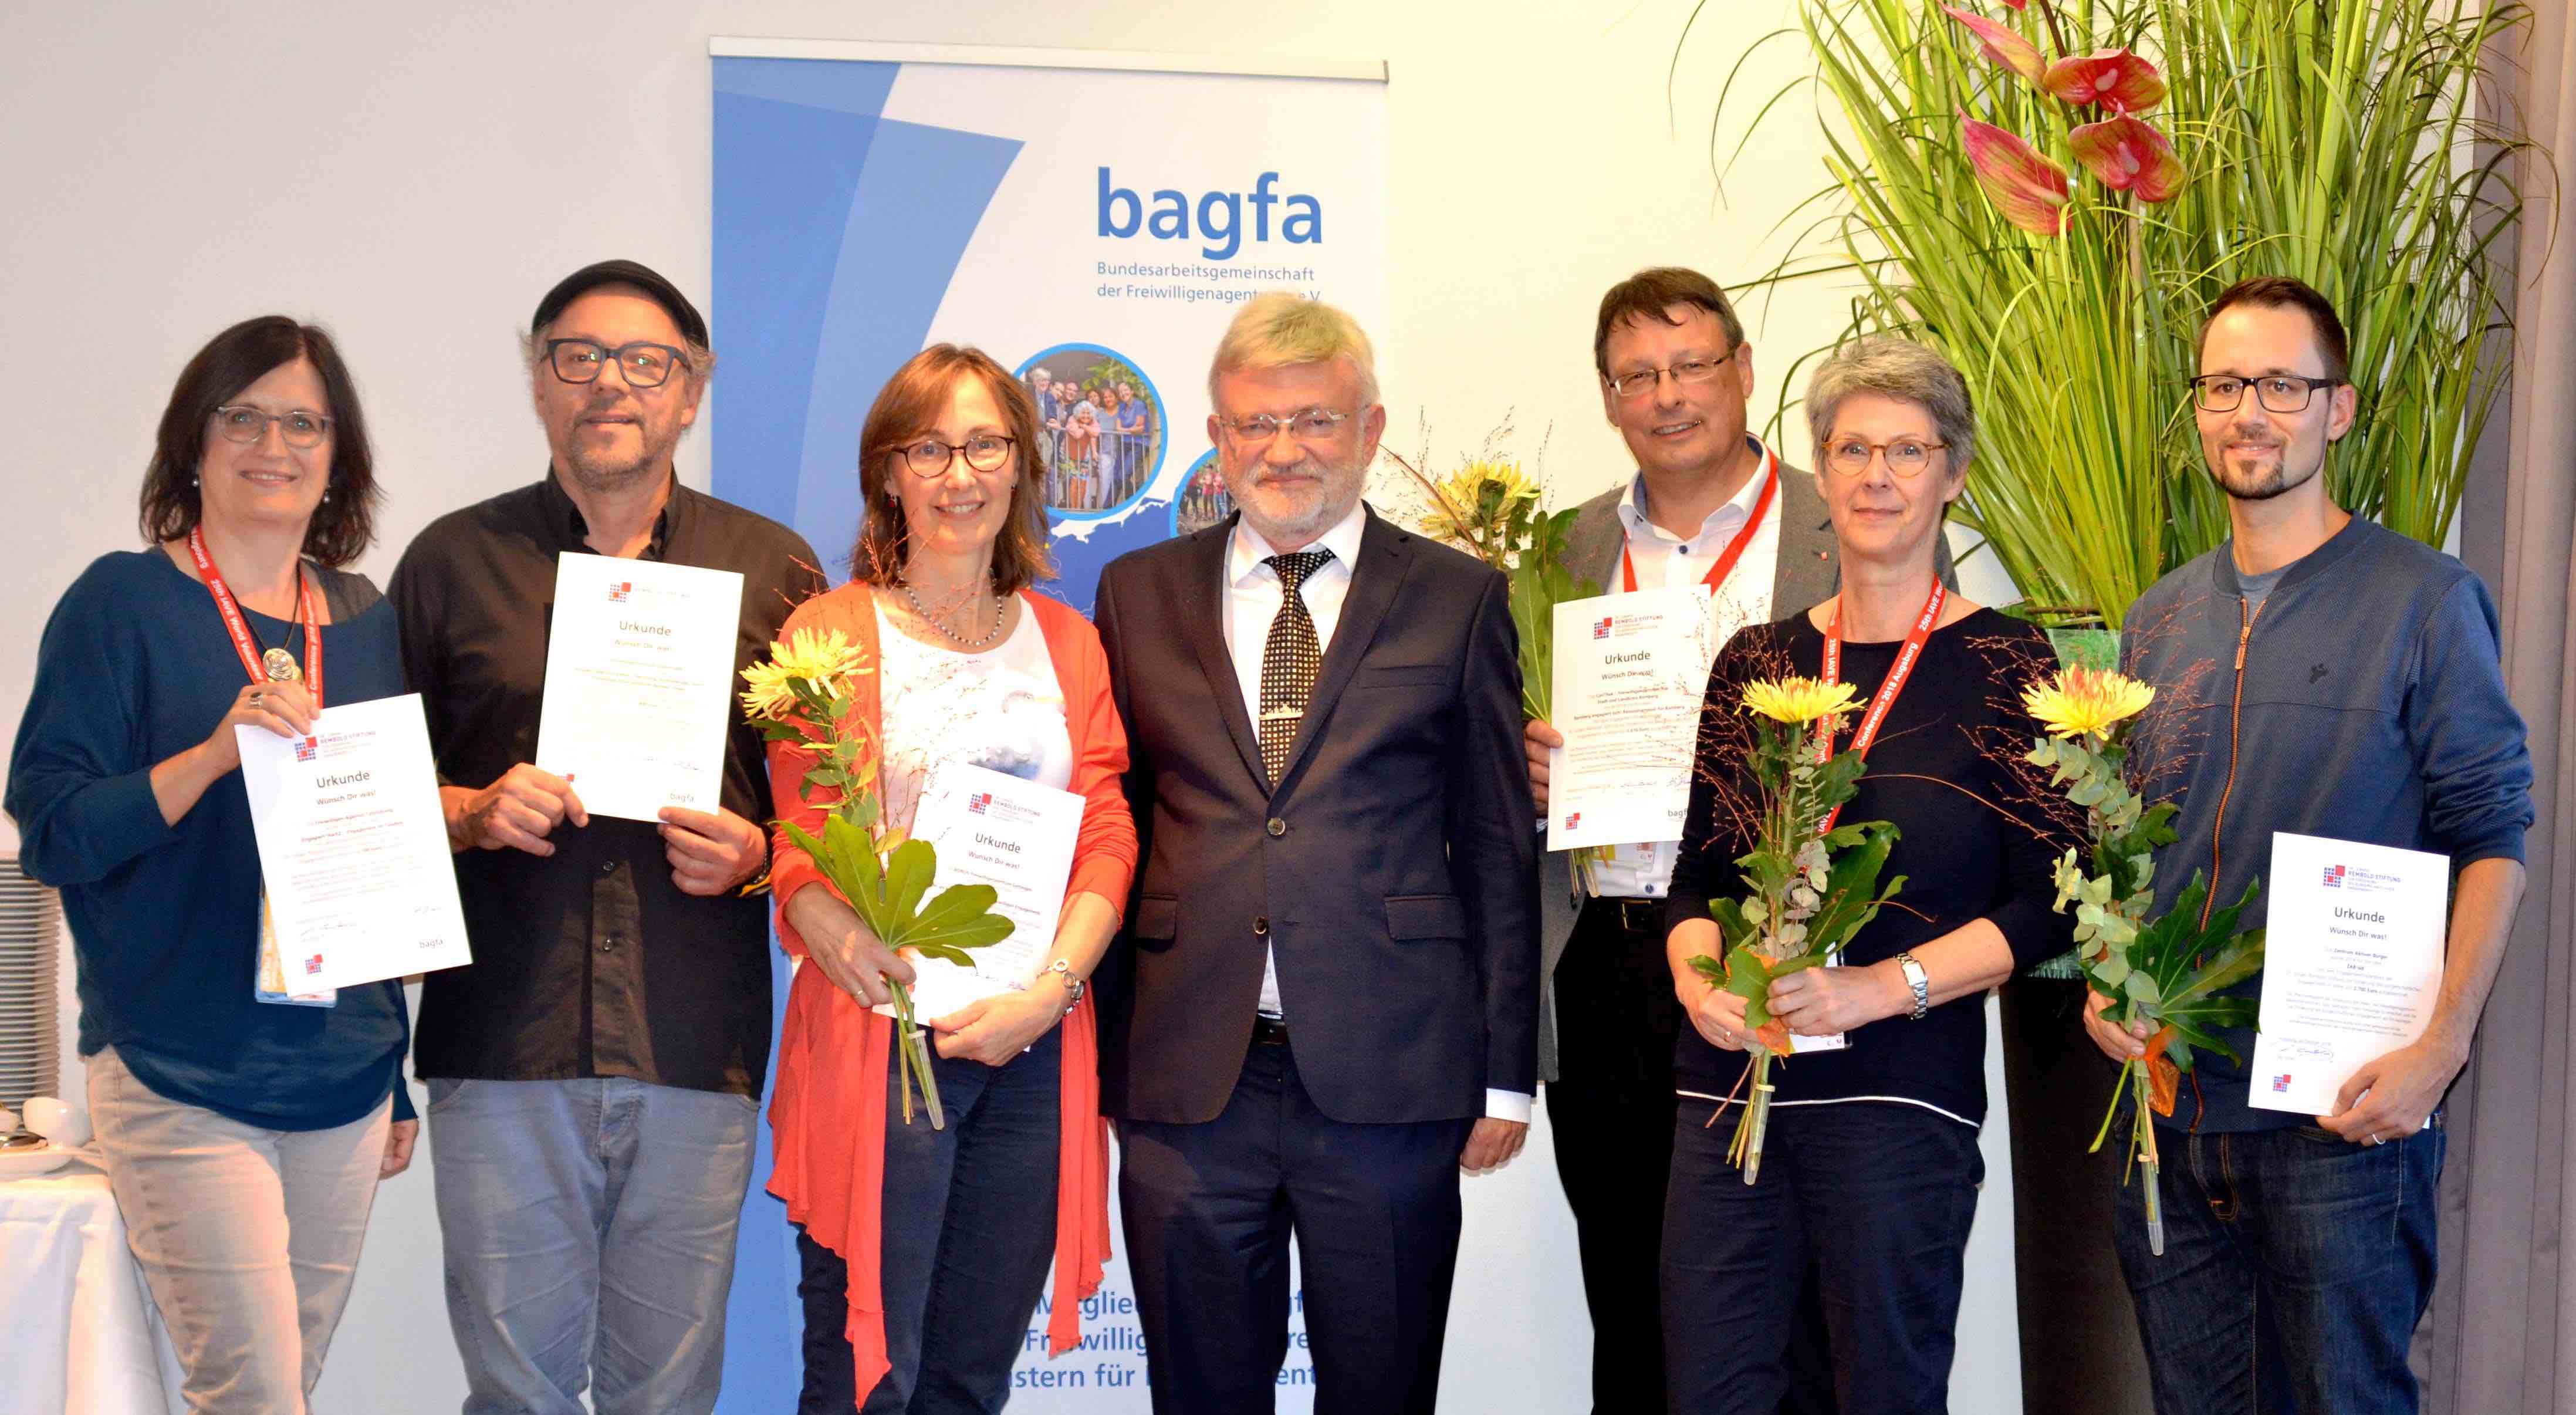 Maria Weiss (3. v. l.) mit den anderen Preisträgern und Dr. Jürgen Rembold (m.), dem Stifter des Engagementförderpreises. Foto: bagfa